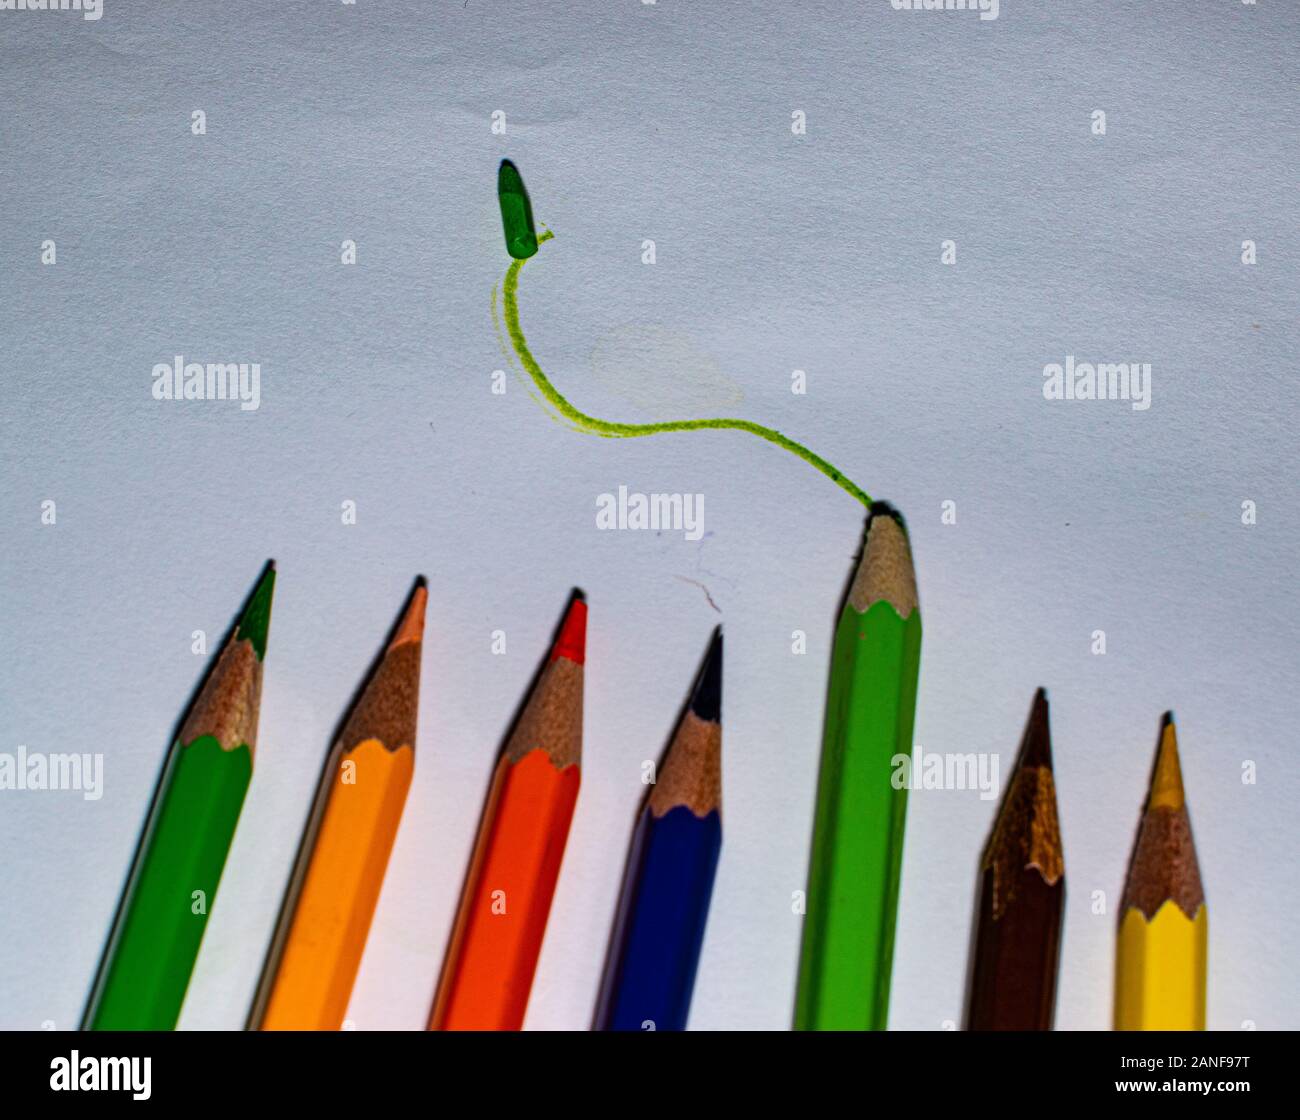 Unterschiedliche Farben der Bleistifte, die in einem Muster. Farbige Buntstifte arrangiert in einer sinnvollen Art und Weise. Nehmen Sie Ihr Leben in die eigenen Hände und verlassen. Stockfoto